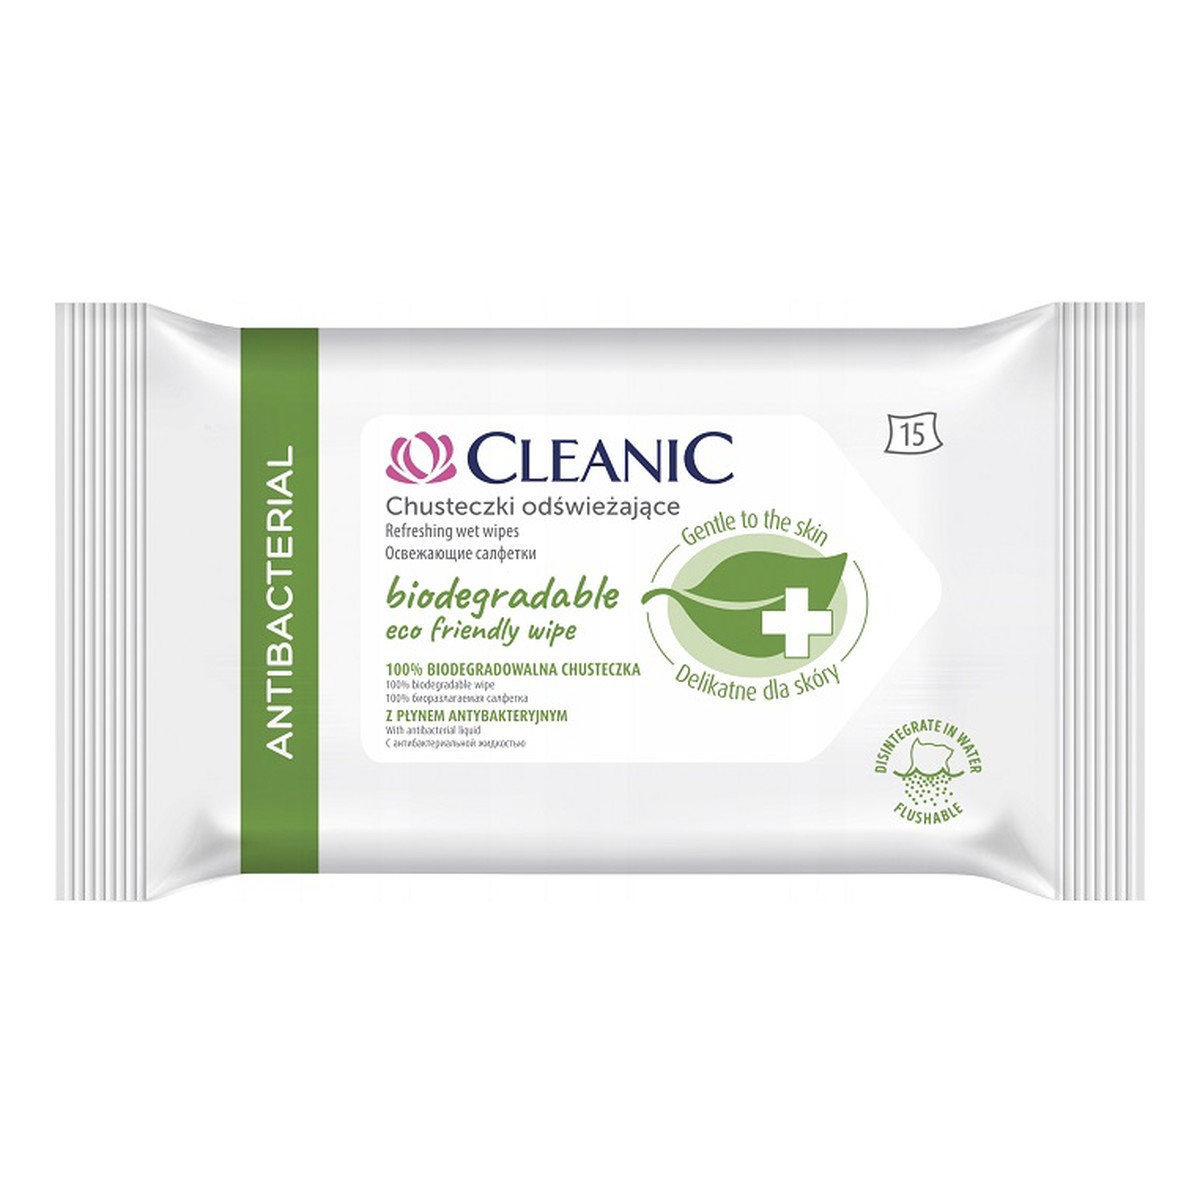 Cleanic Antibacterial Biodegradowalne chusteczki odświeżające z płynem antybakteryjnym 15 szt.